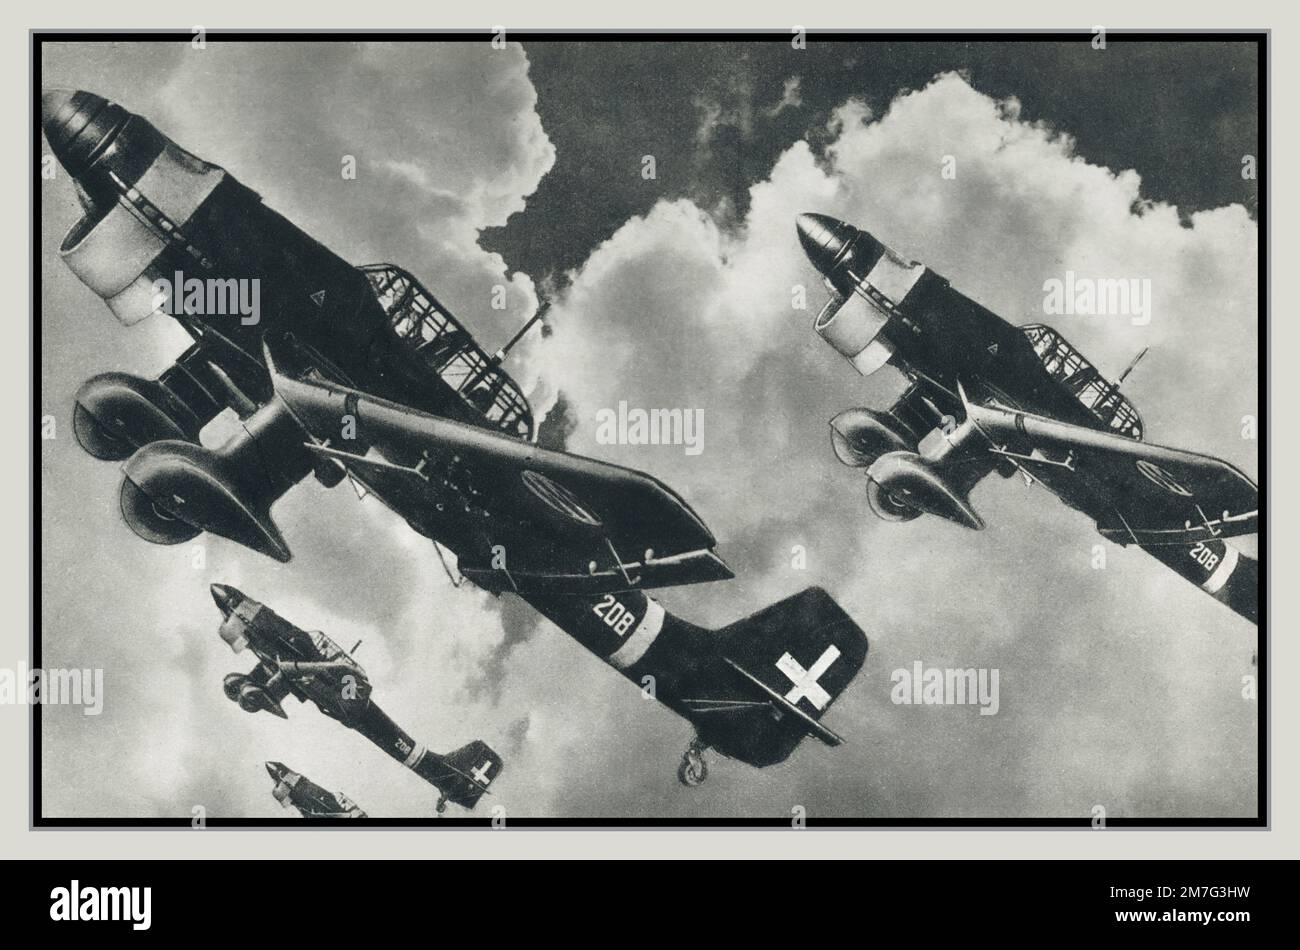 WW2 bombardiers de plongée Stuka allemands fournis à l'armée de l'air italienne. 159 Junkers Ju 87 Stuka opérait dans la Regia Aeronautica italienne. De septembre 1940 à septembre 1943, les Stukas de la Regia Aeronautica se sont battus sans relâche dans les théâtres nord-africains, méditerranéens et des Balkans, marquant des succès que d'autres avions d'attaque au sol dans les rangs italiens ne pouvaient pas revendiquer. Les "Picchiatelli" ont été fortement impliqués dans la campagne initiale de bombardement contre Malte et, en janvier 1941, avec German Stukas, ont réussi à frapper le porte-avions HMS illustre. Banque D'Images